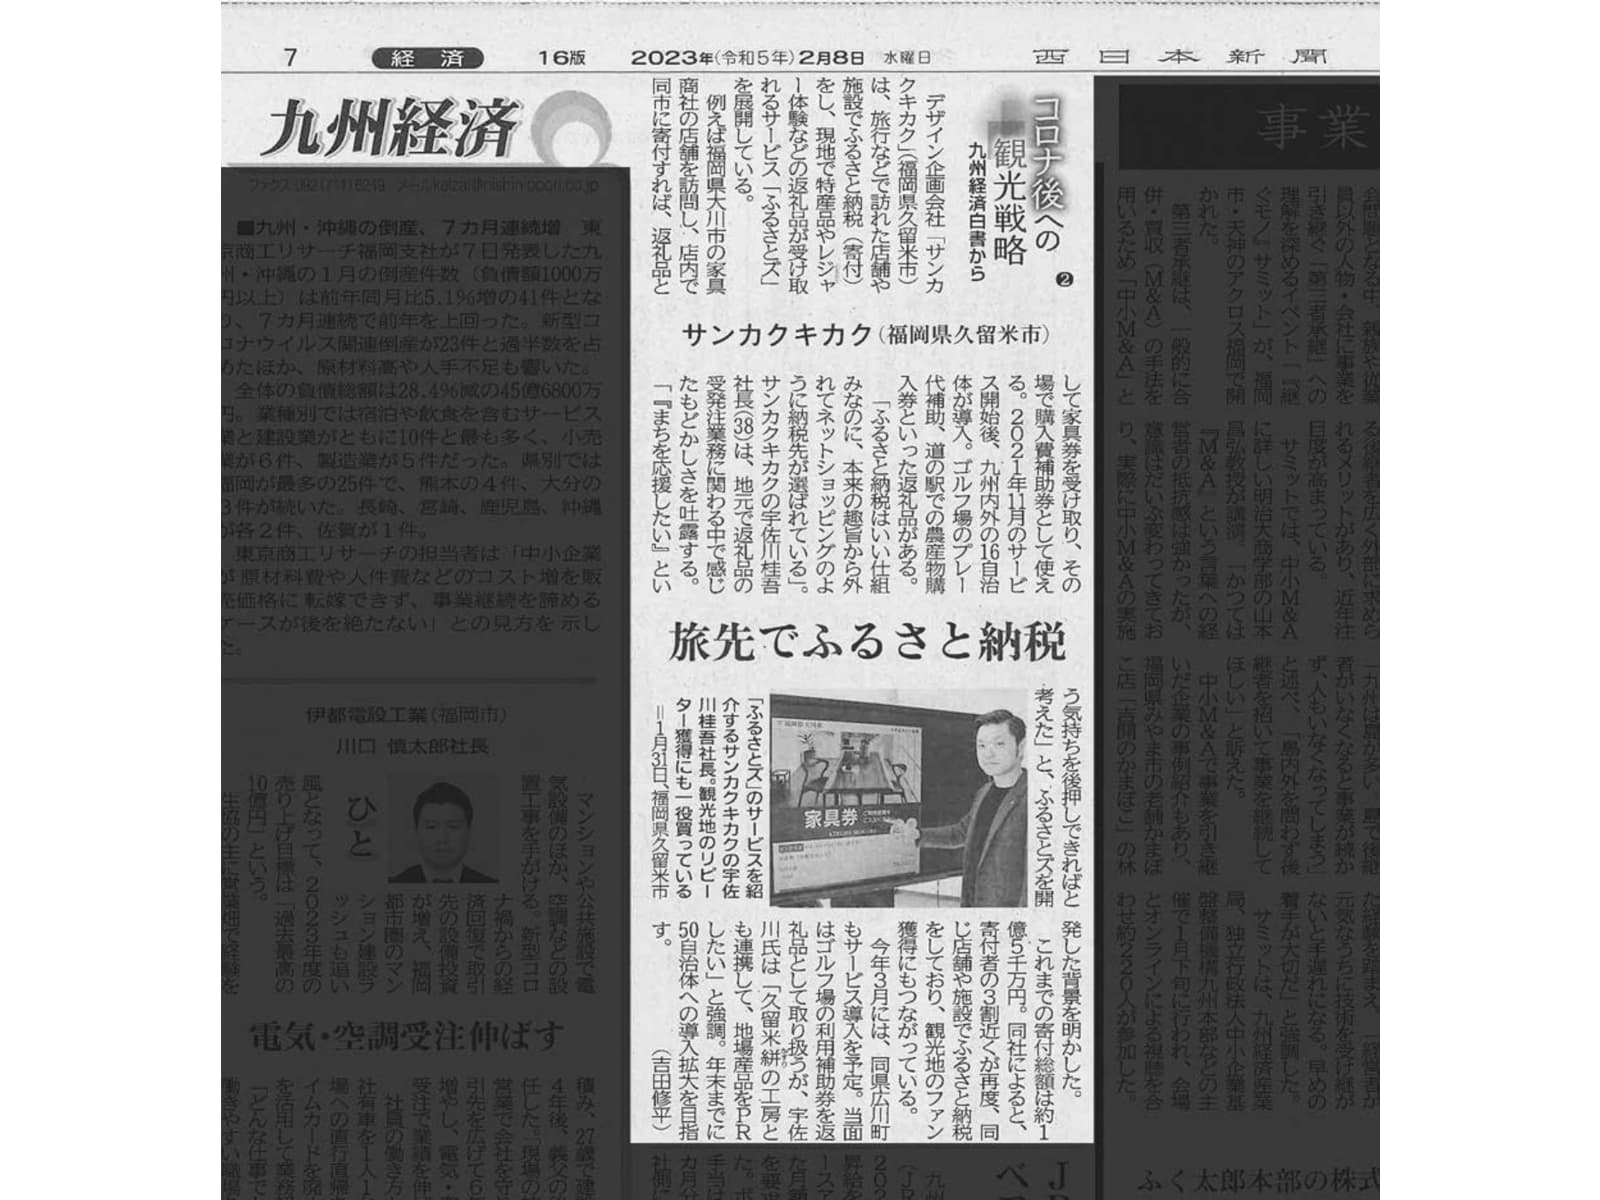 ふるさとズ｜店舗型ふるさと納税（R）『ふるさとズ』を西日本新聞に取材いただきました。